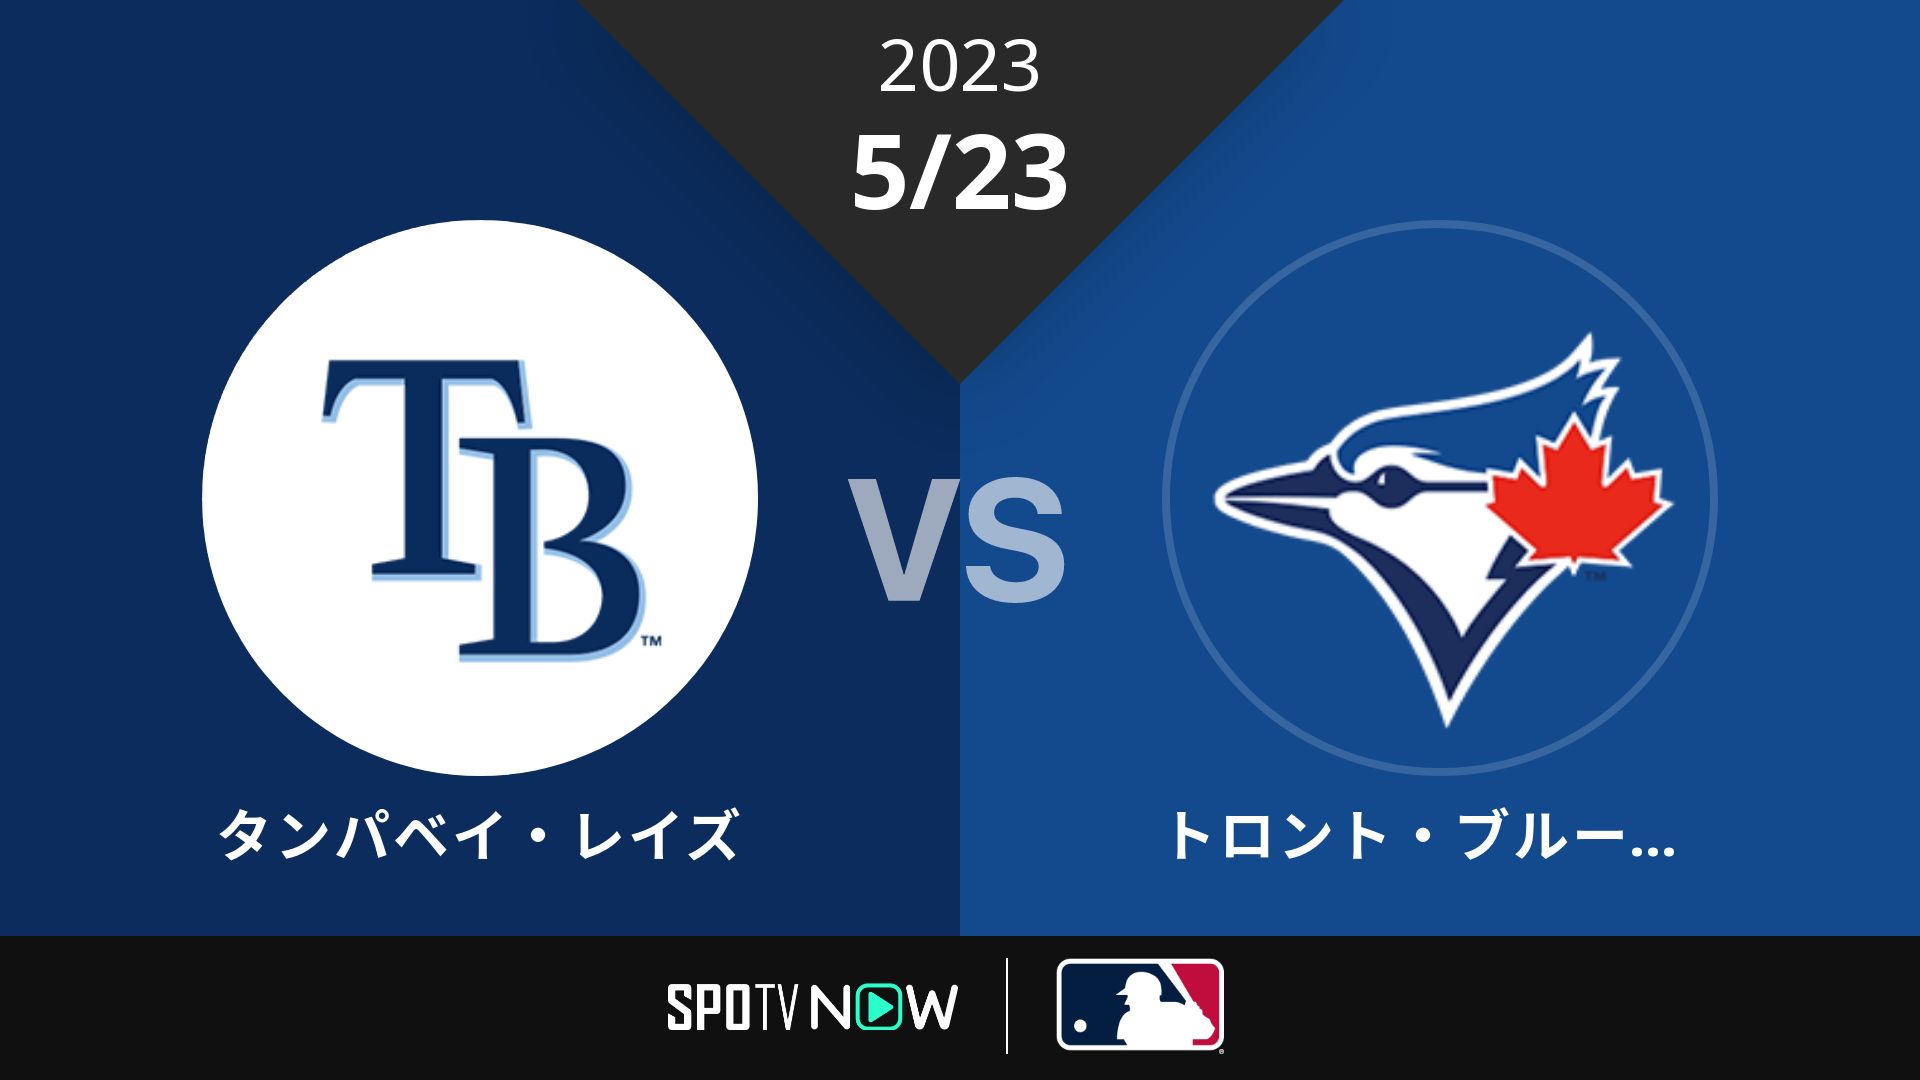 2023/5/23 レイズ vs ブルージェイズ [MLB]